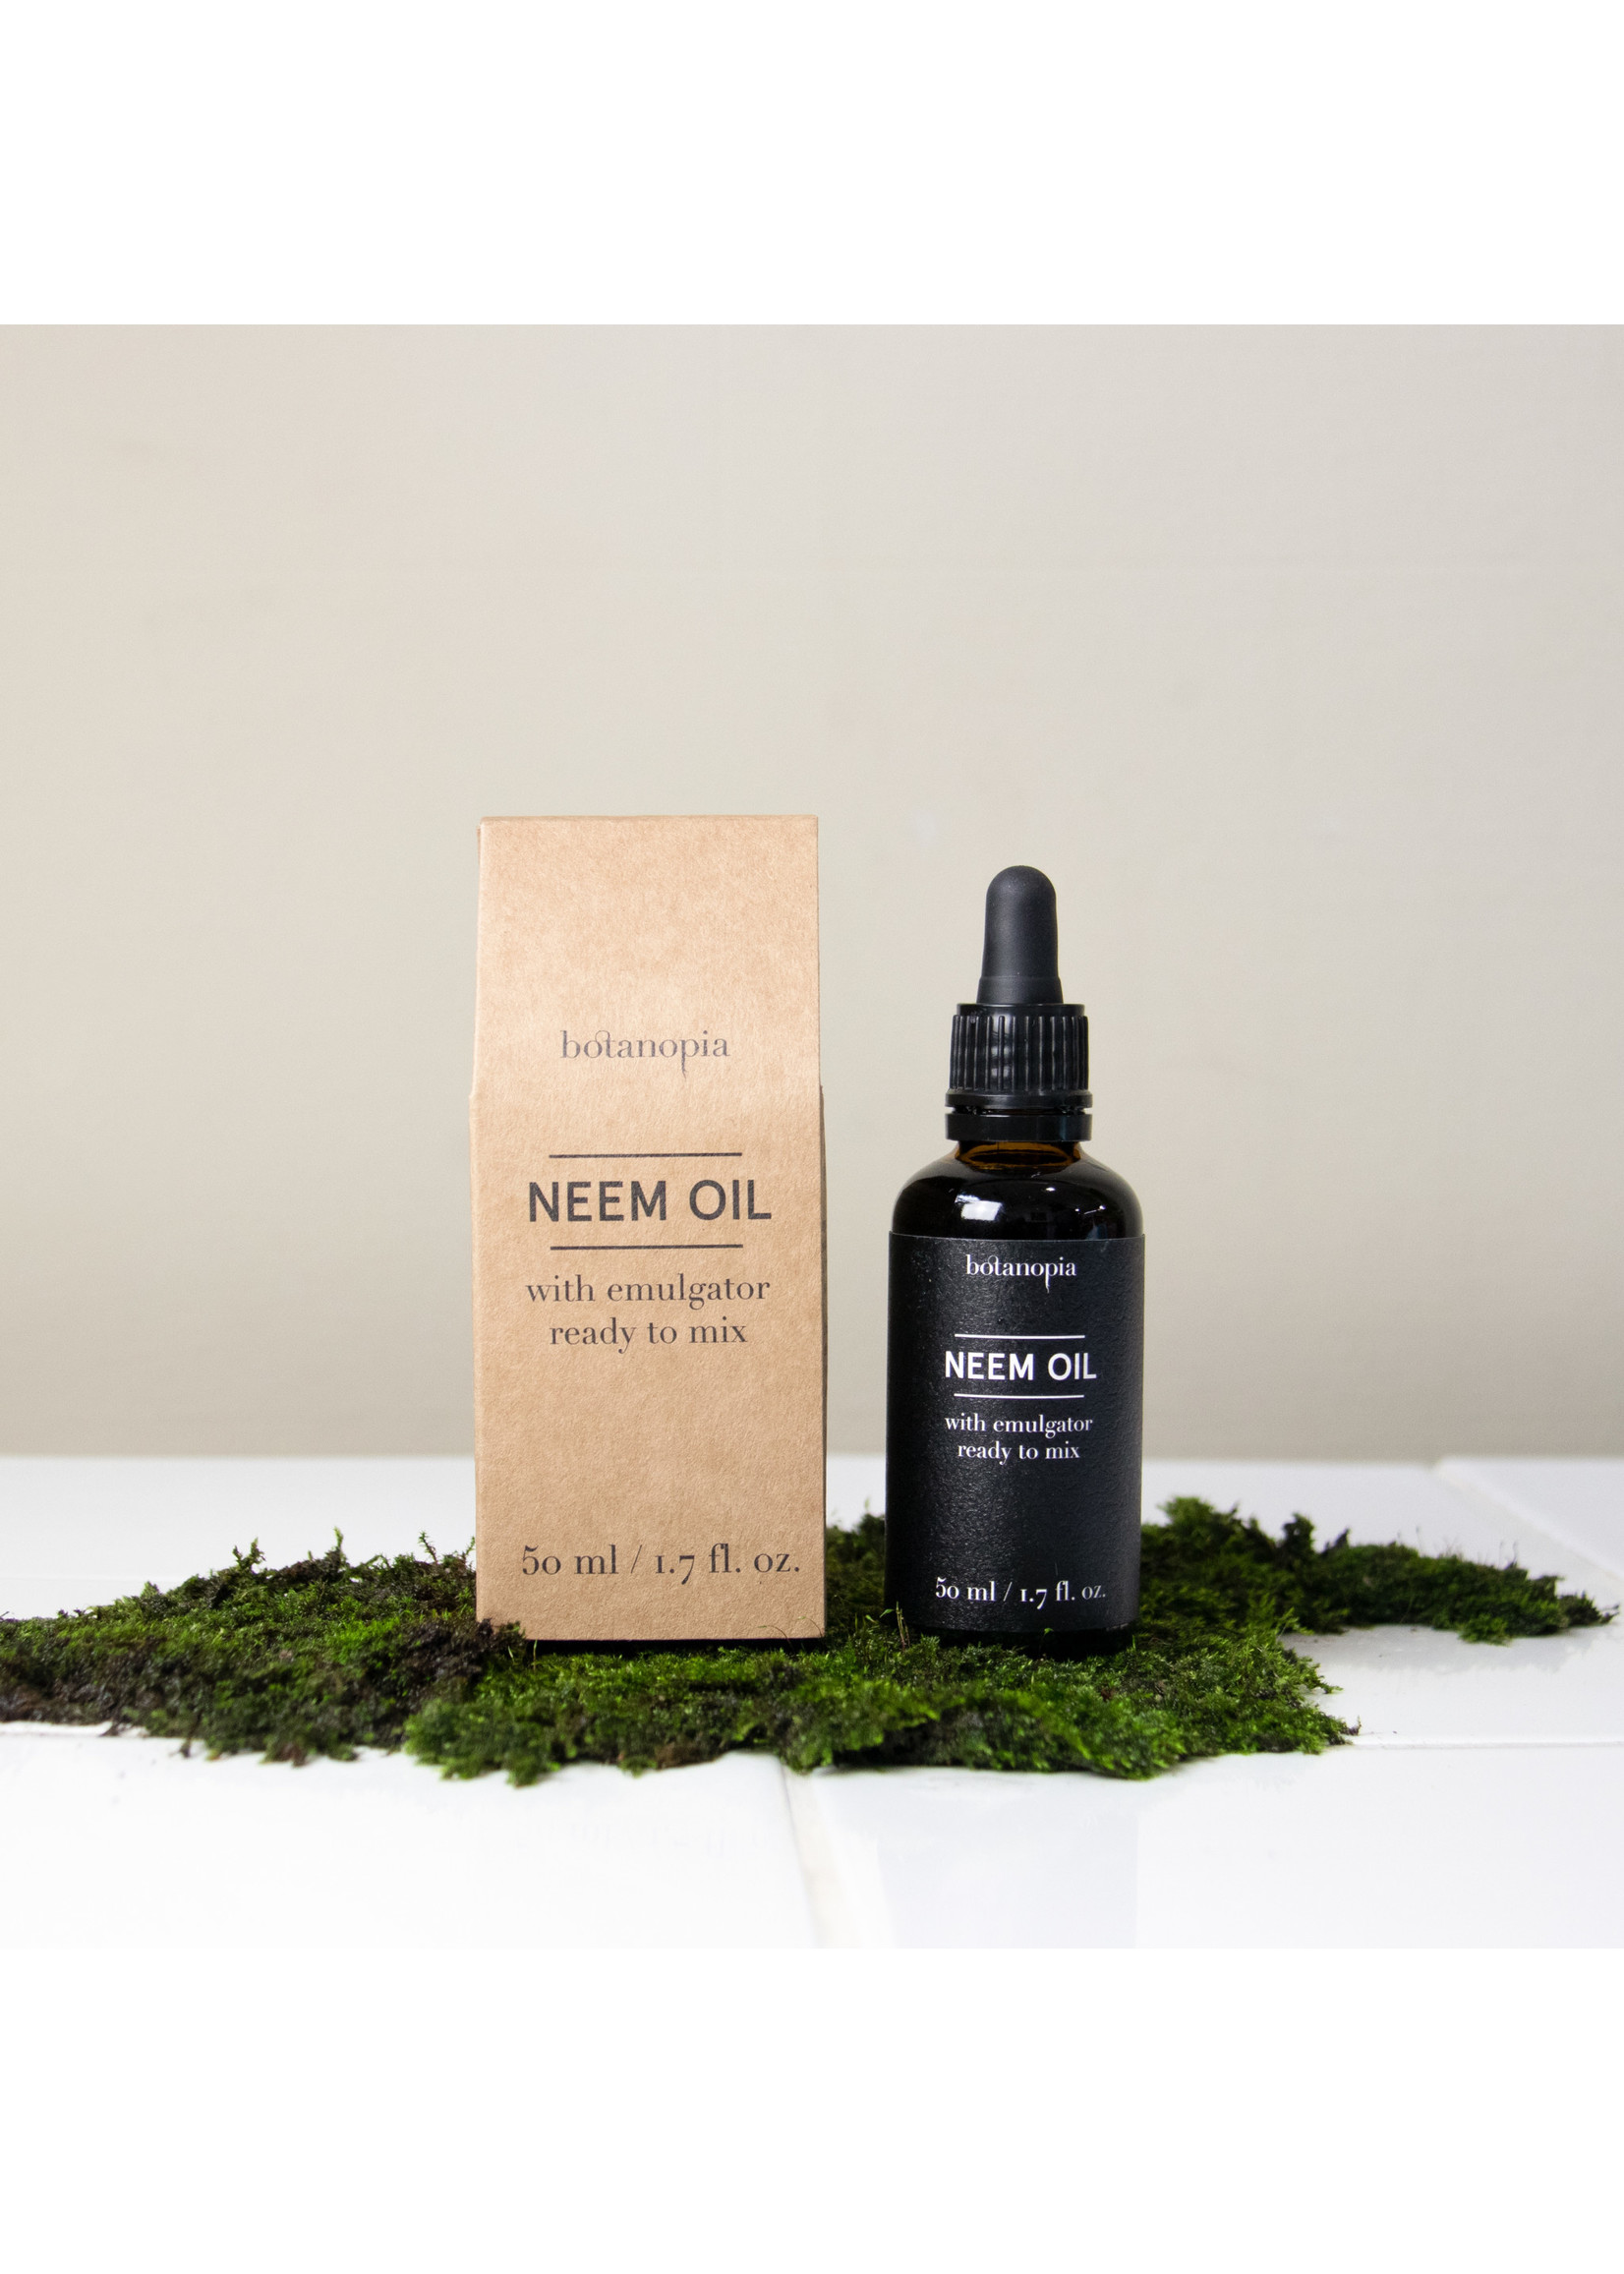 Huile de neem - Ziani  Fournisseur d'huiles et graisses végétales